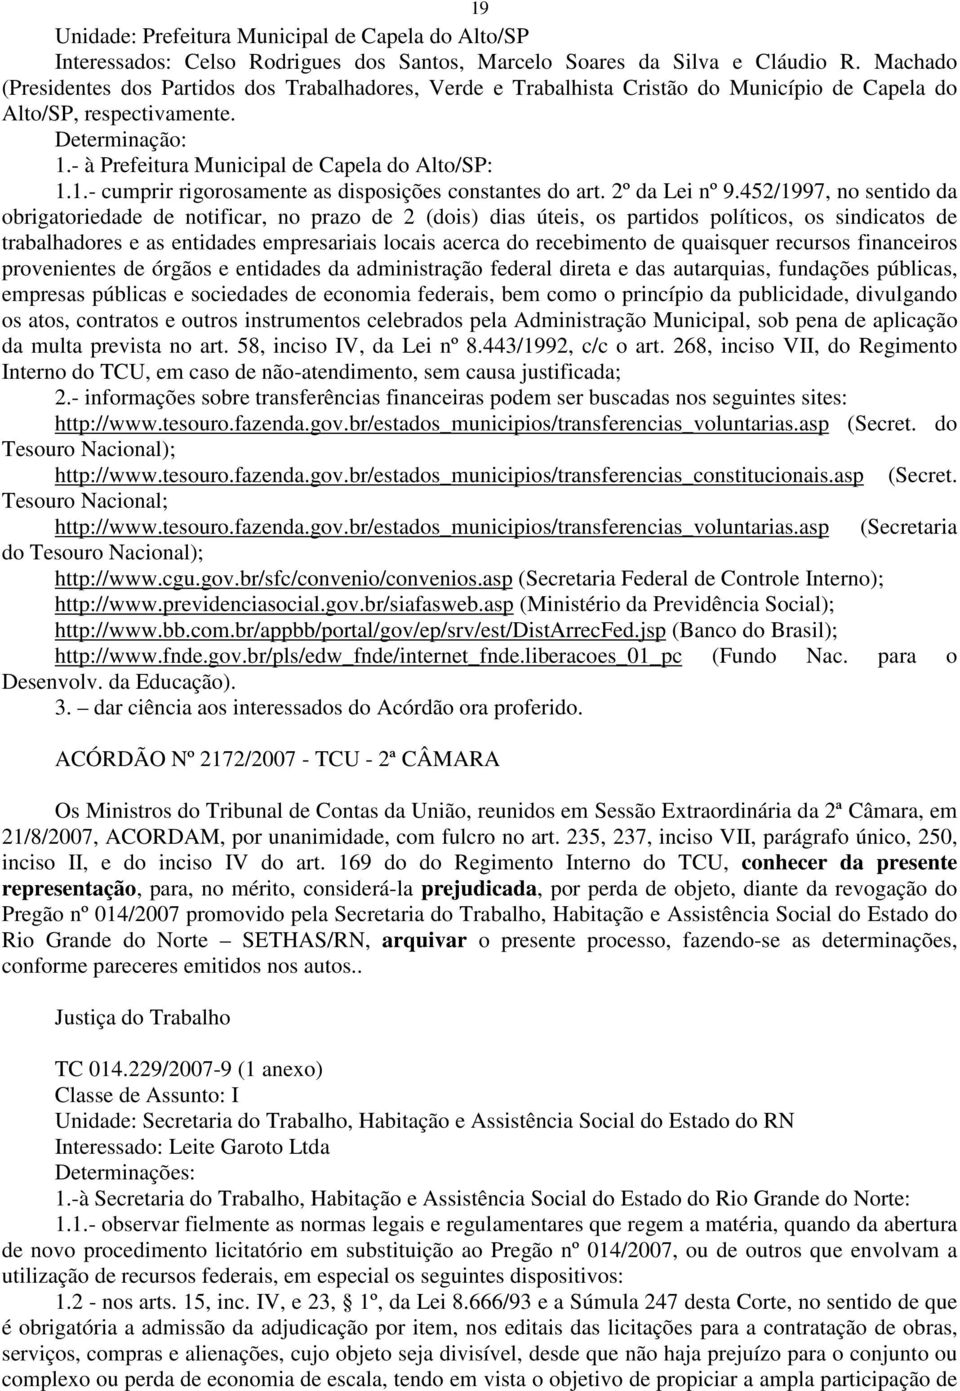 - à Prefeitura Municipal de Capela do Alto/SP: 1.1.- cumprir rigorosamente as disposições constantes do art. 2º da Lei nº 9.